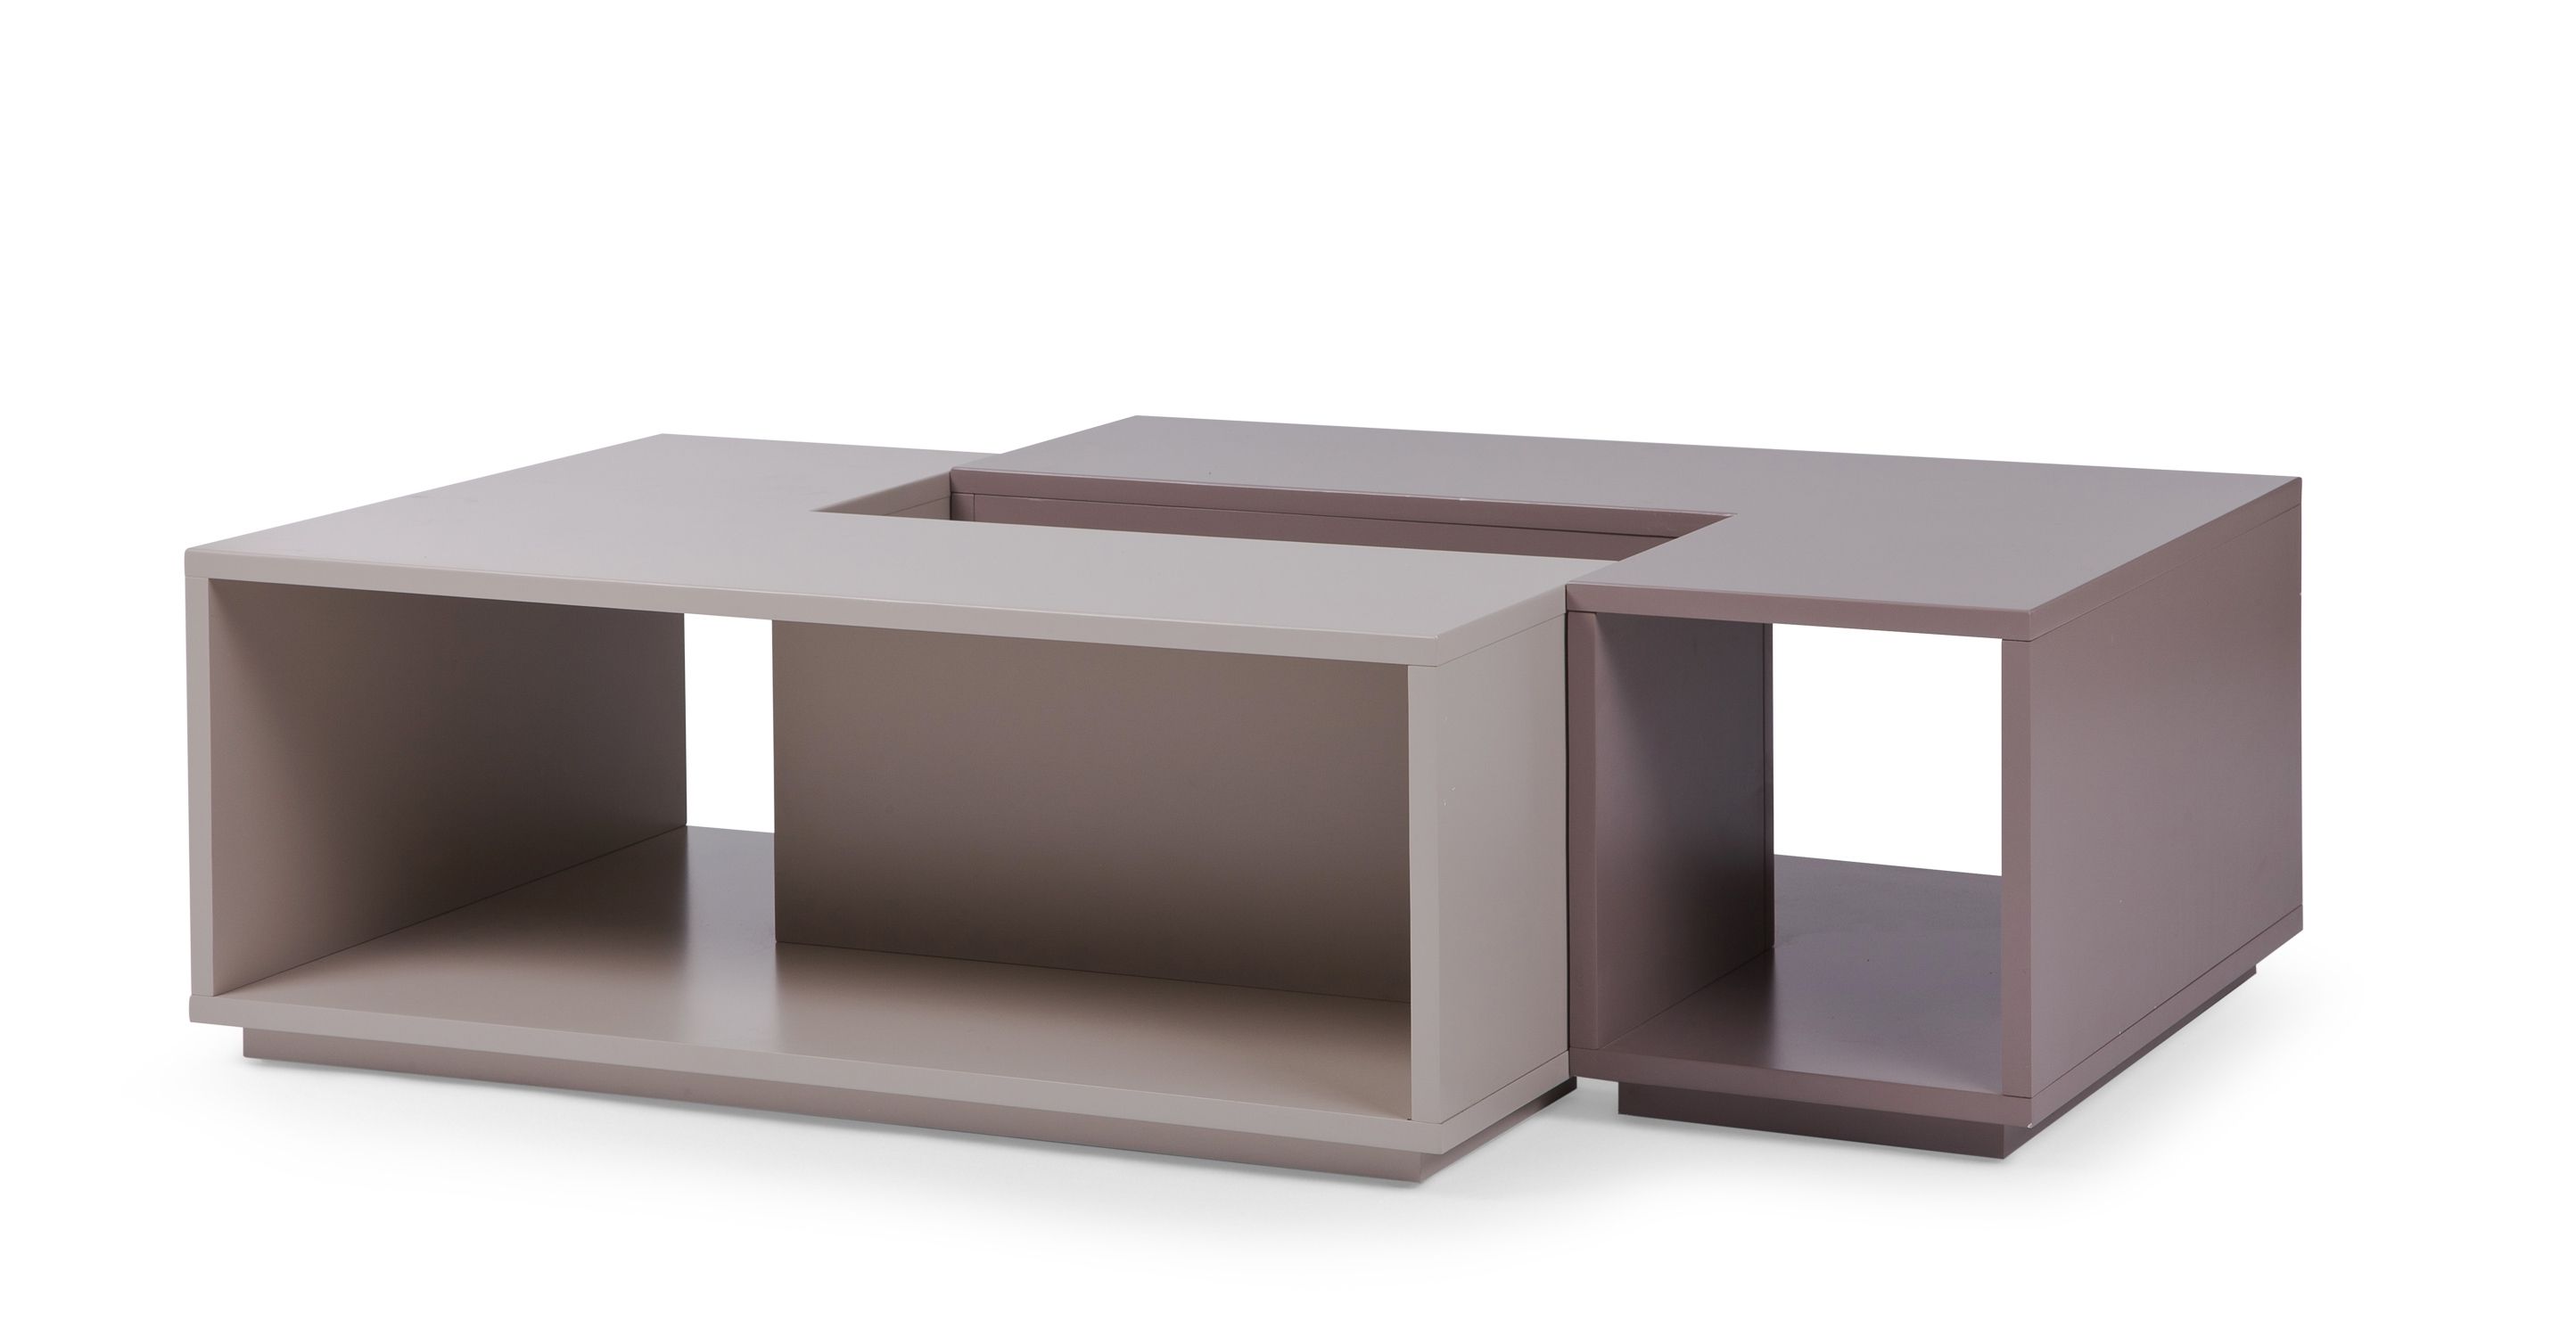 Fabulous Modular Coffee Table With Modular Coffee Table Design 2 Regarding Modular Coffee Tables (View 6 of 30)